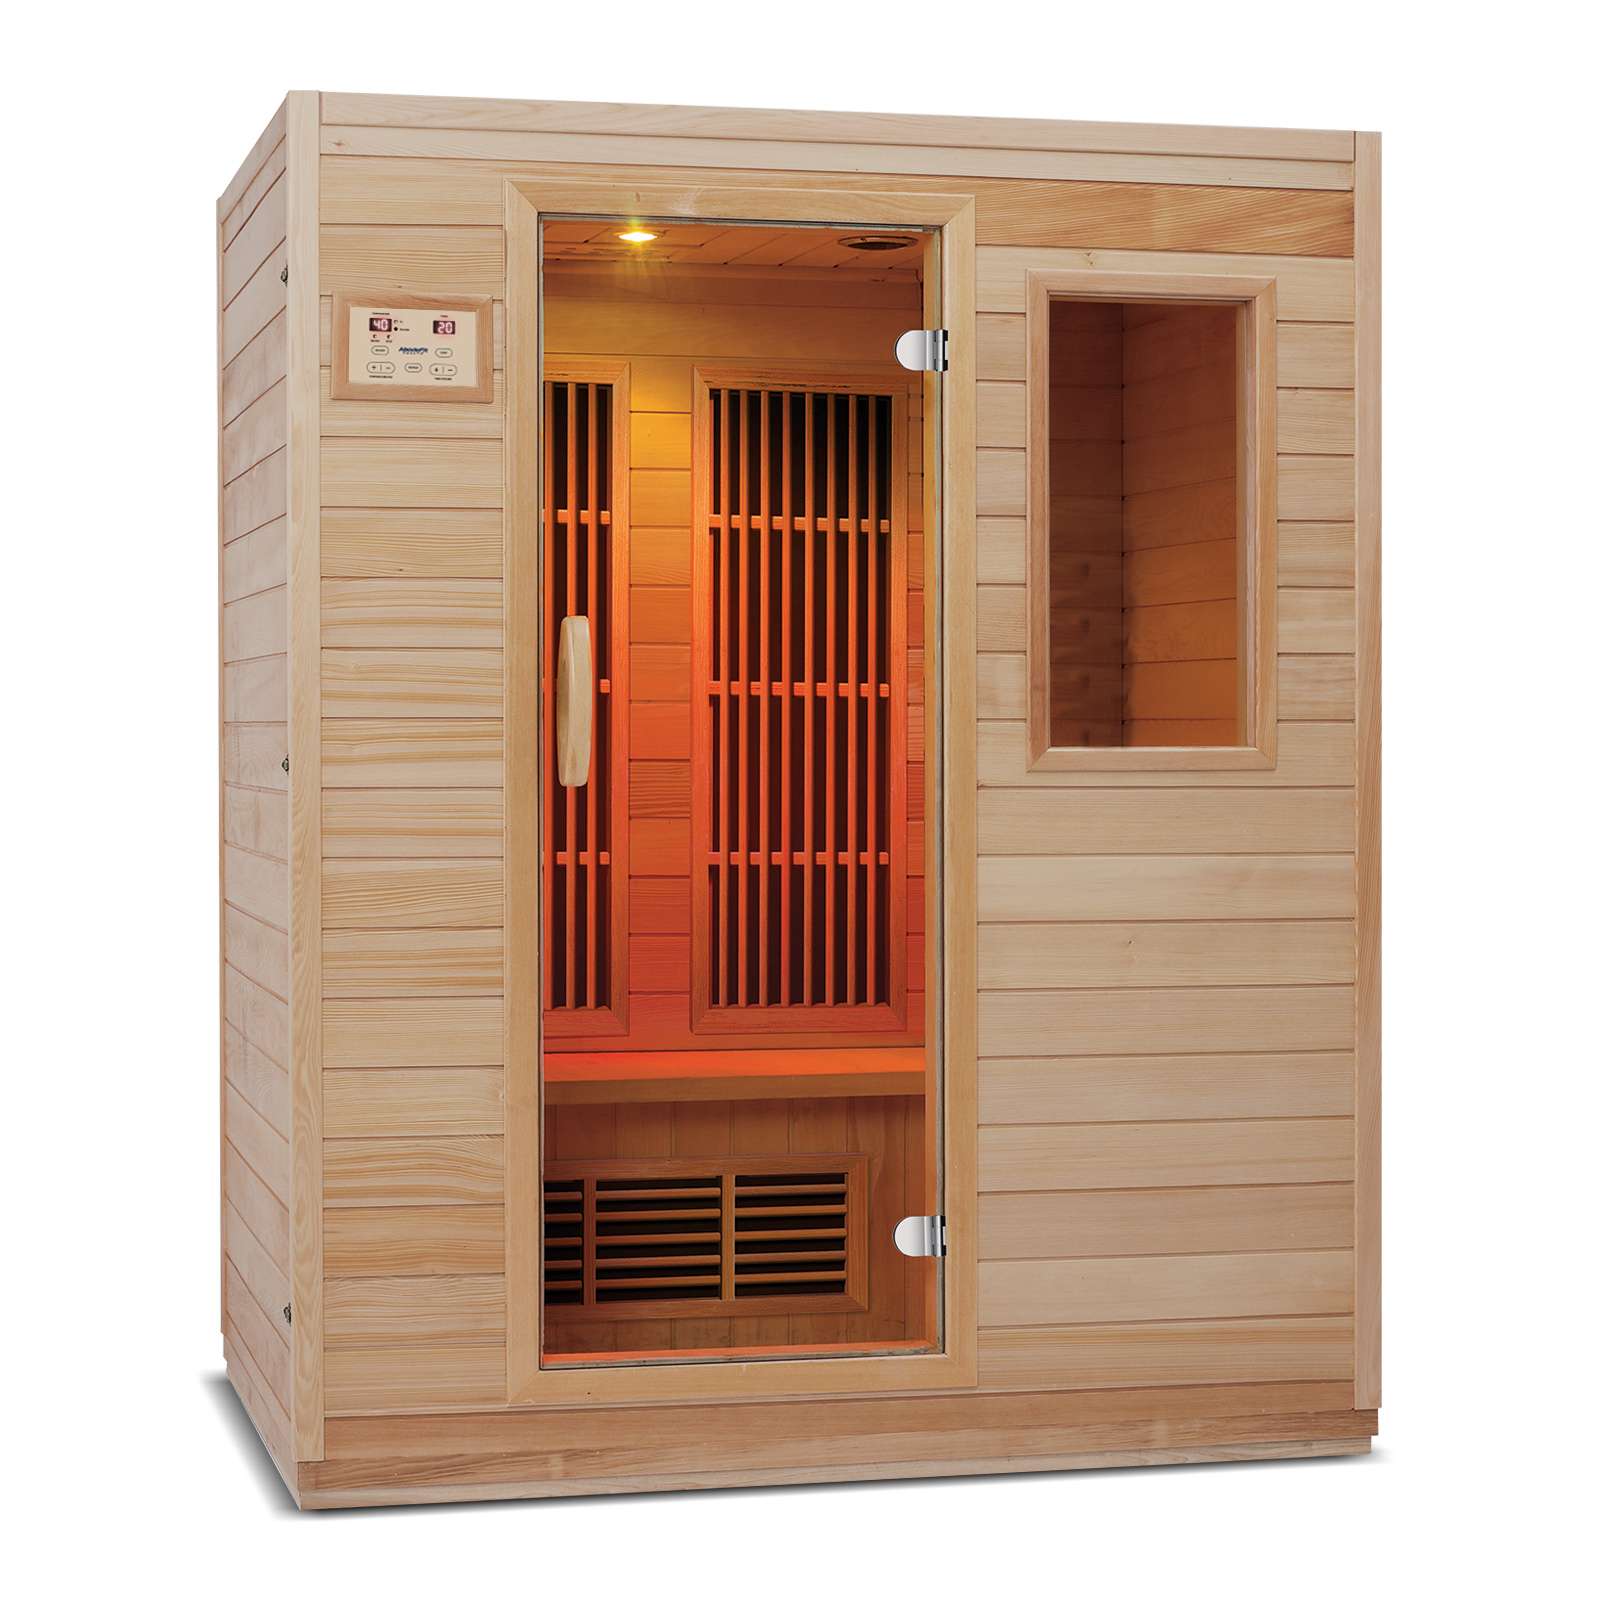 Zen Ferninfrarot-Sauna für 3 Personen